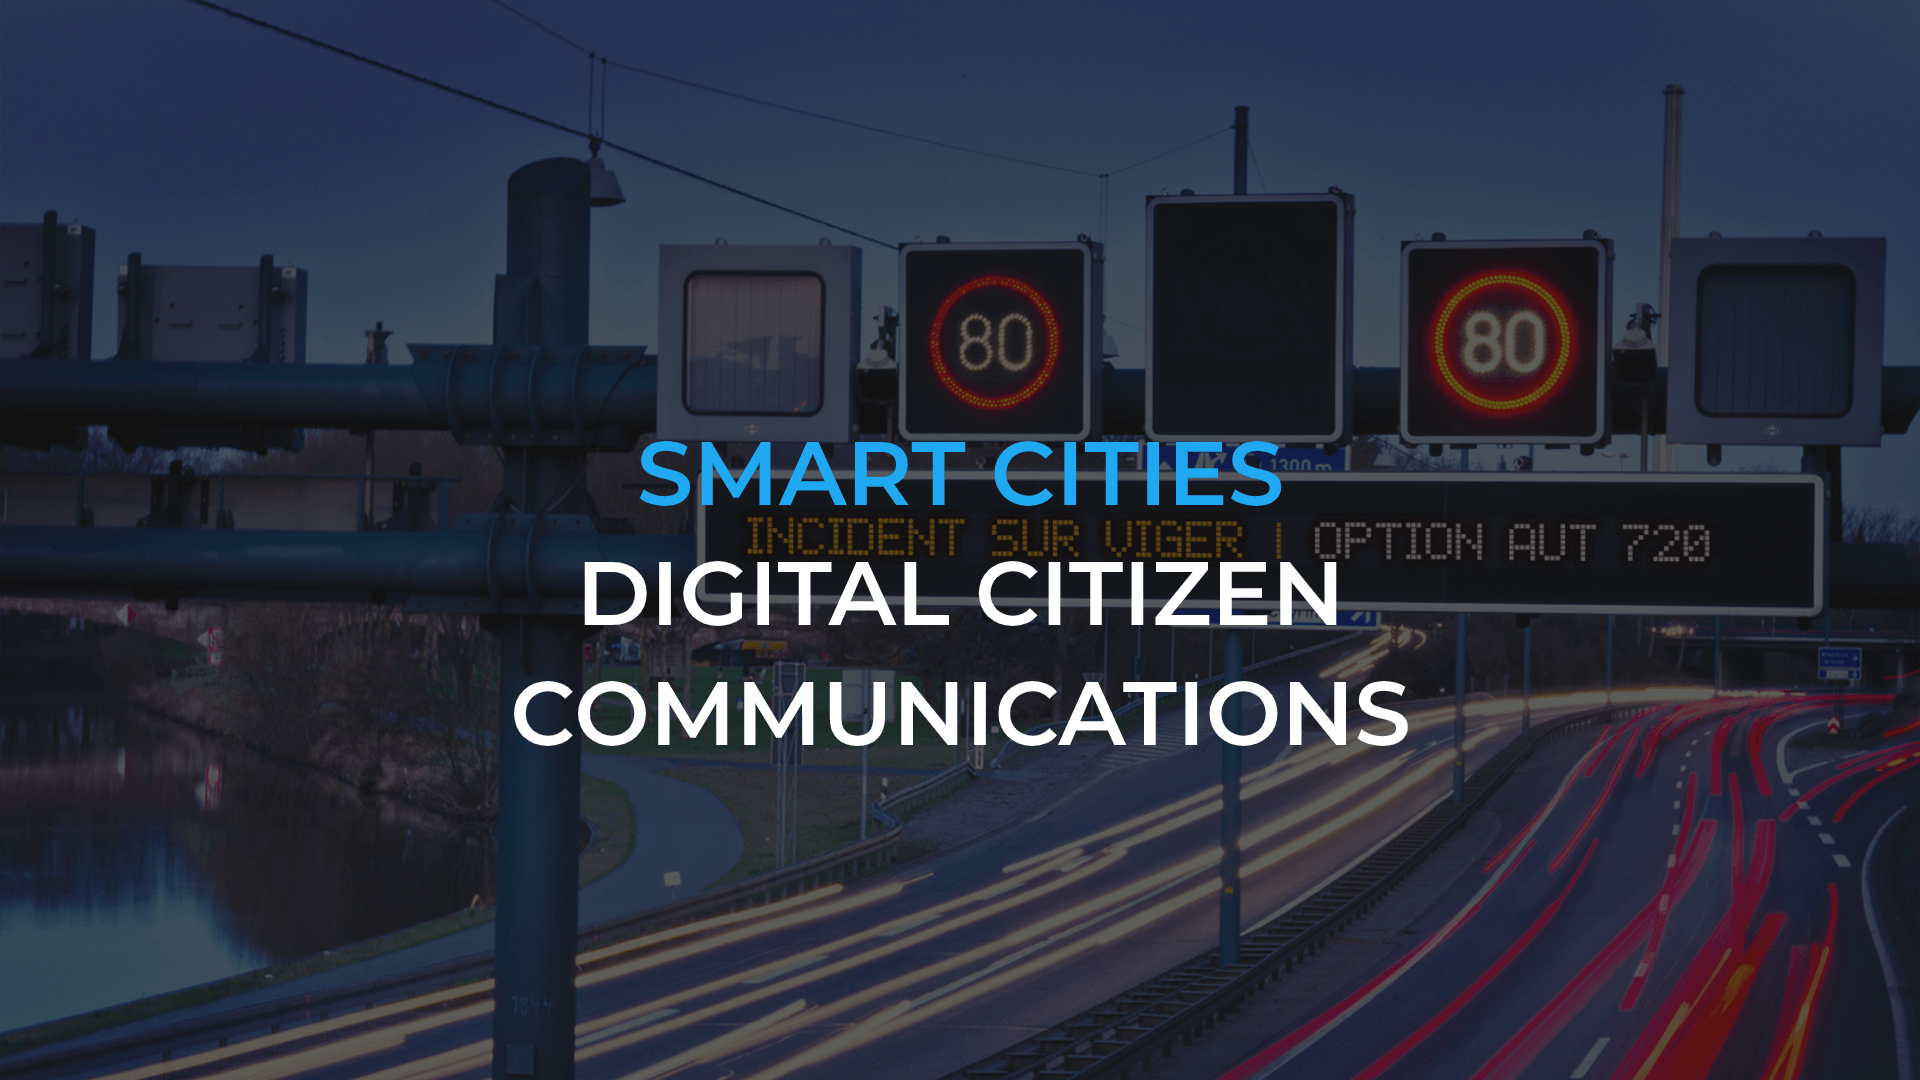 Smart cities – Digital citizen communications